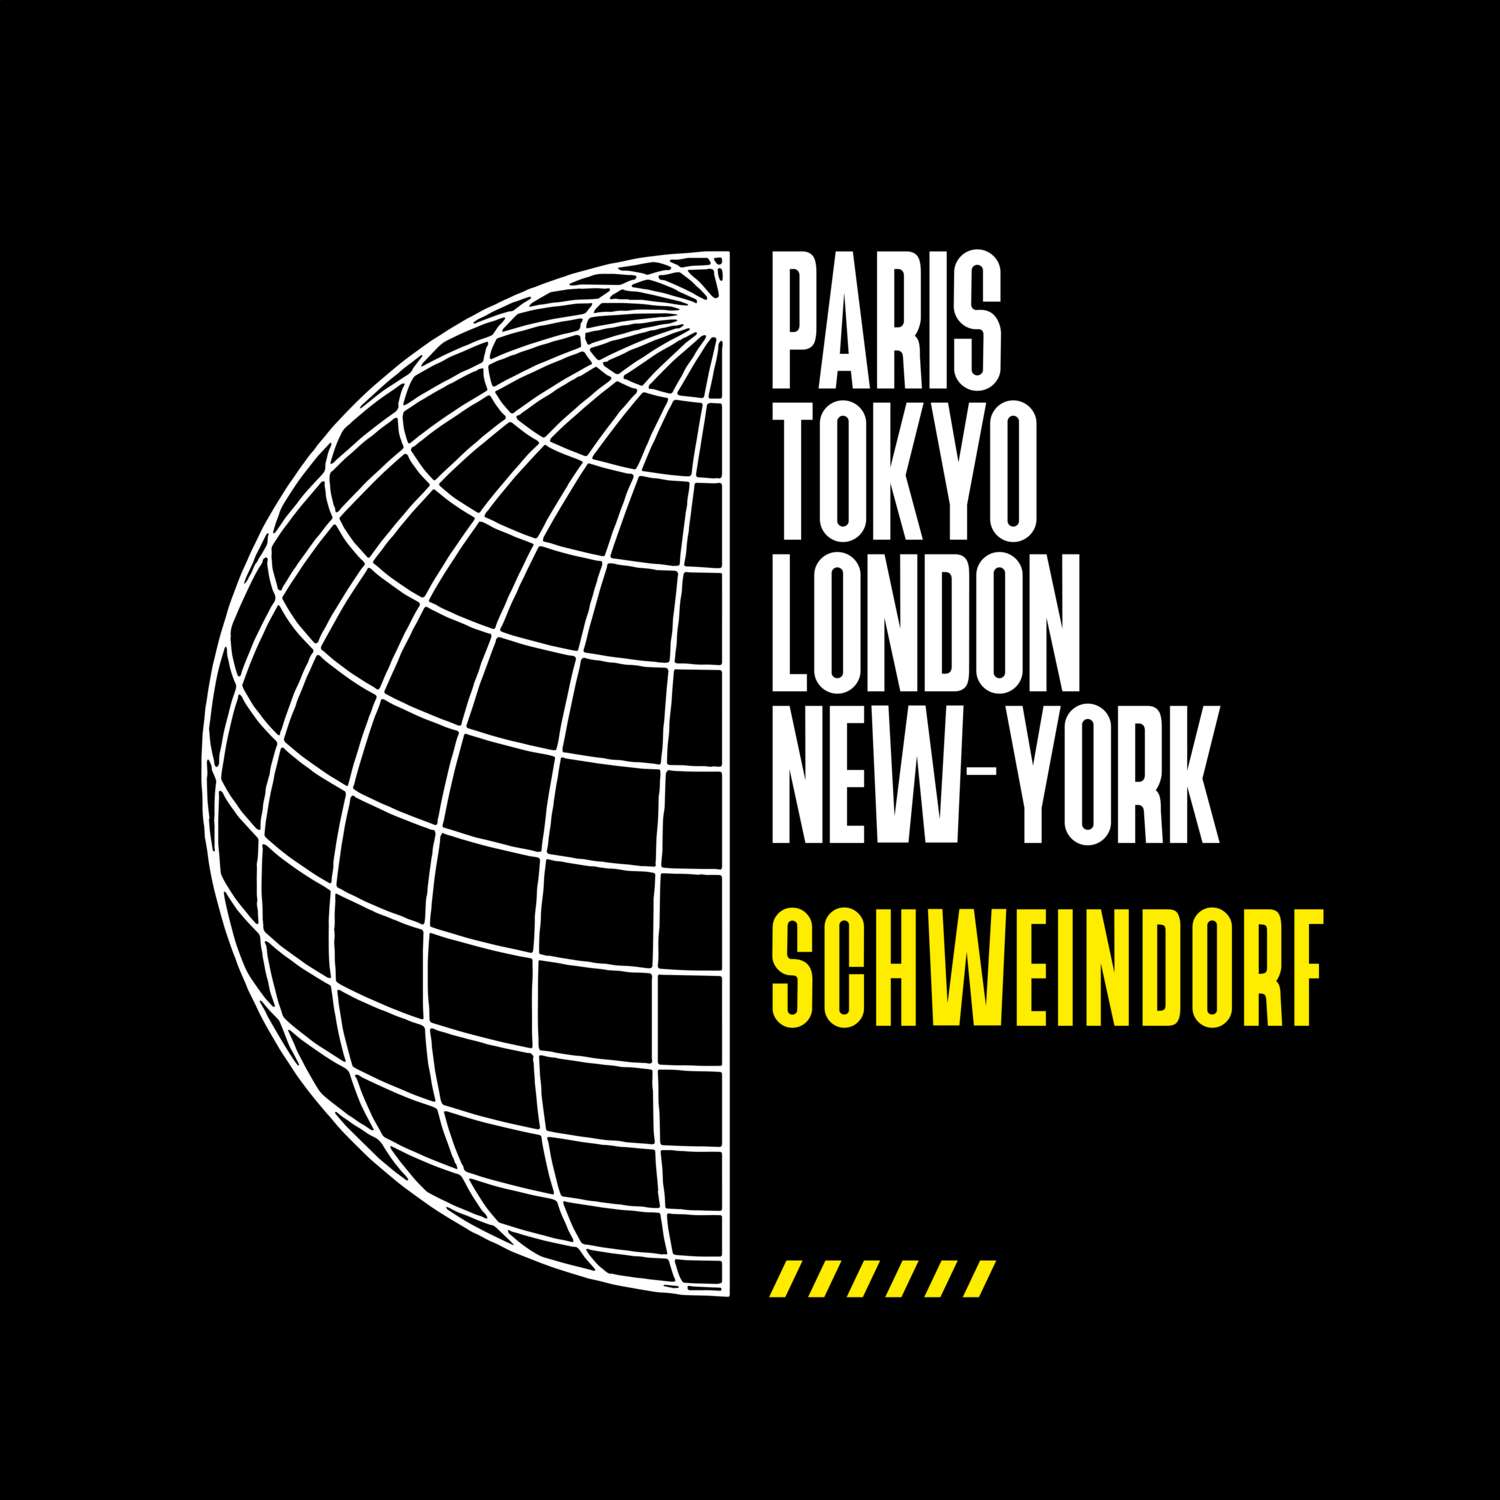 Schweindorf T-Shirt »Paris Tokyo London«